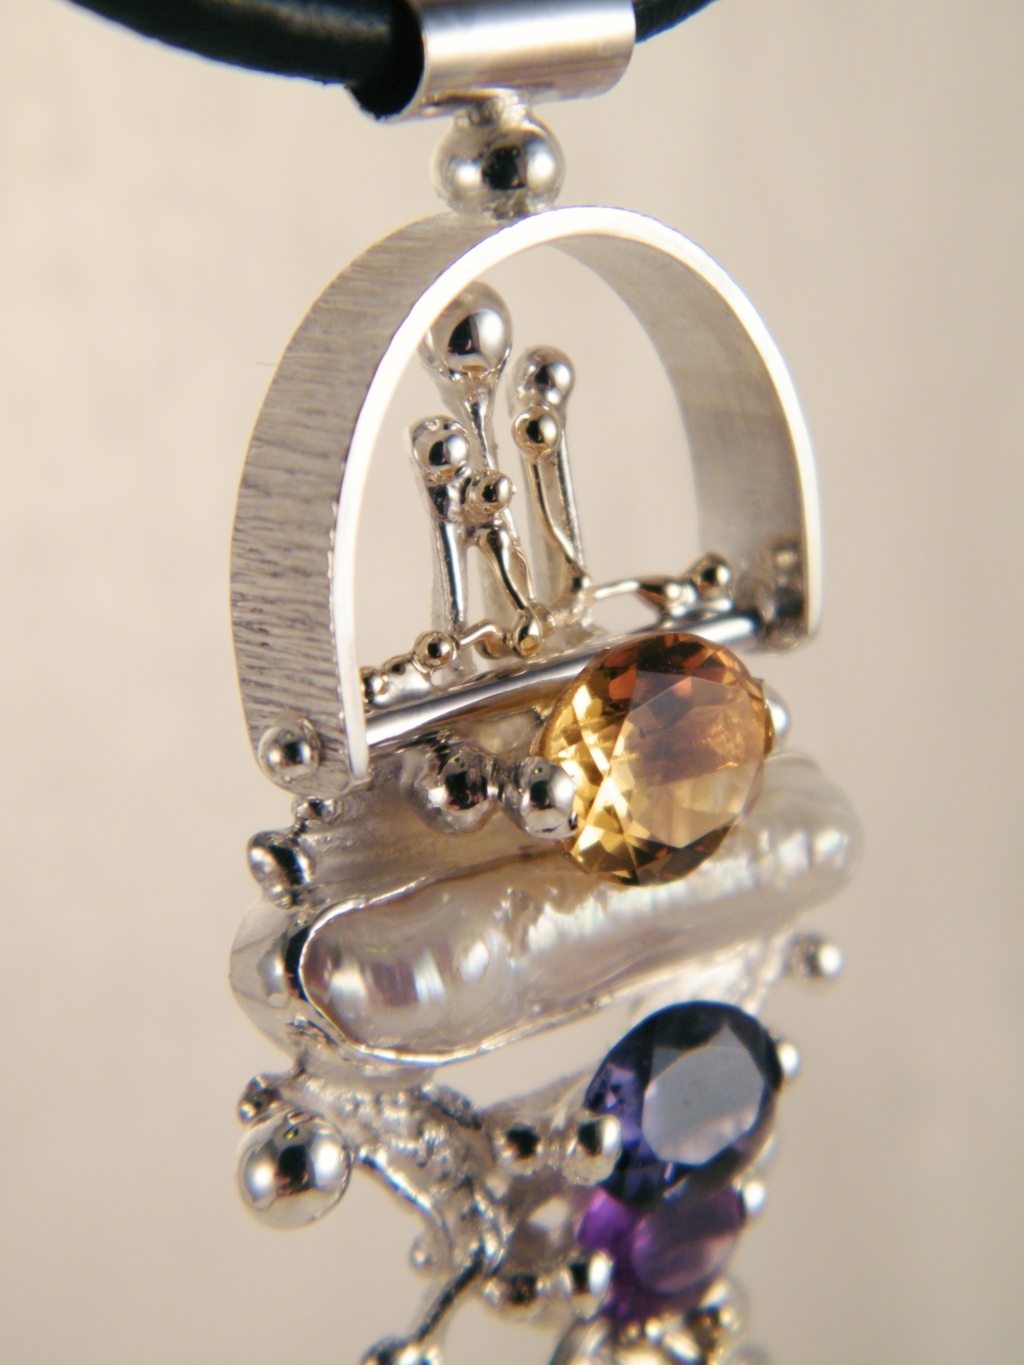 gregory pyra piro håndlavet vedhæng 2650, håndlavet vedhæng lavet af guld og sølv, blandet metal smykker, håndlavet vedhæng med ametyst og perle, håndlavet vedhæng med ametyst og citrin, håndlavet vedhæng med iolit og perle, smykker solgt i kunst- og håndværksgallerier, smykker vist på internationale messer